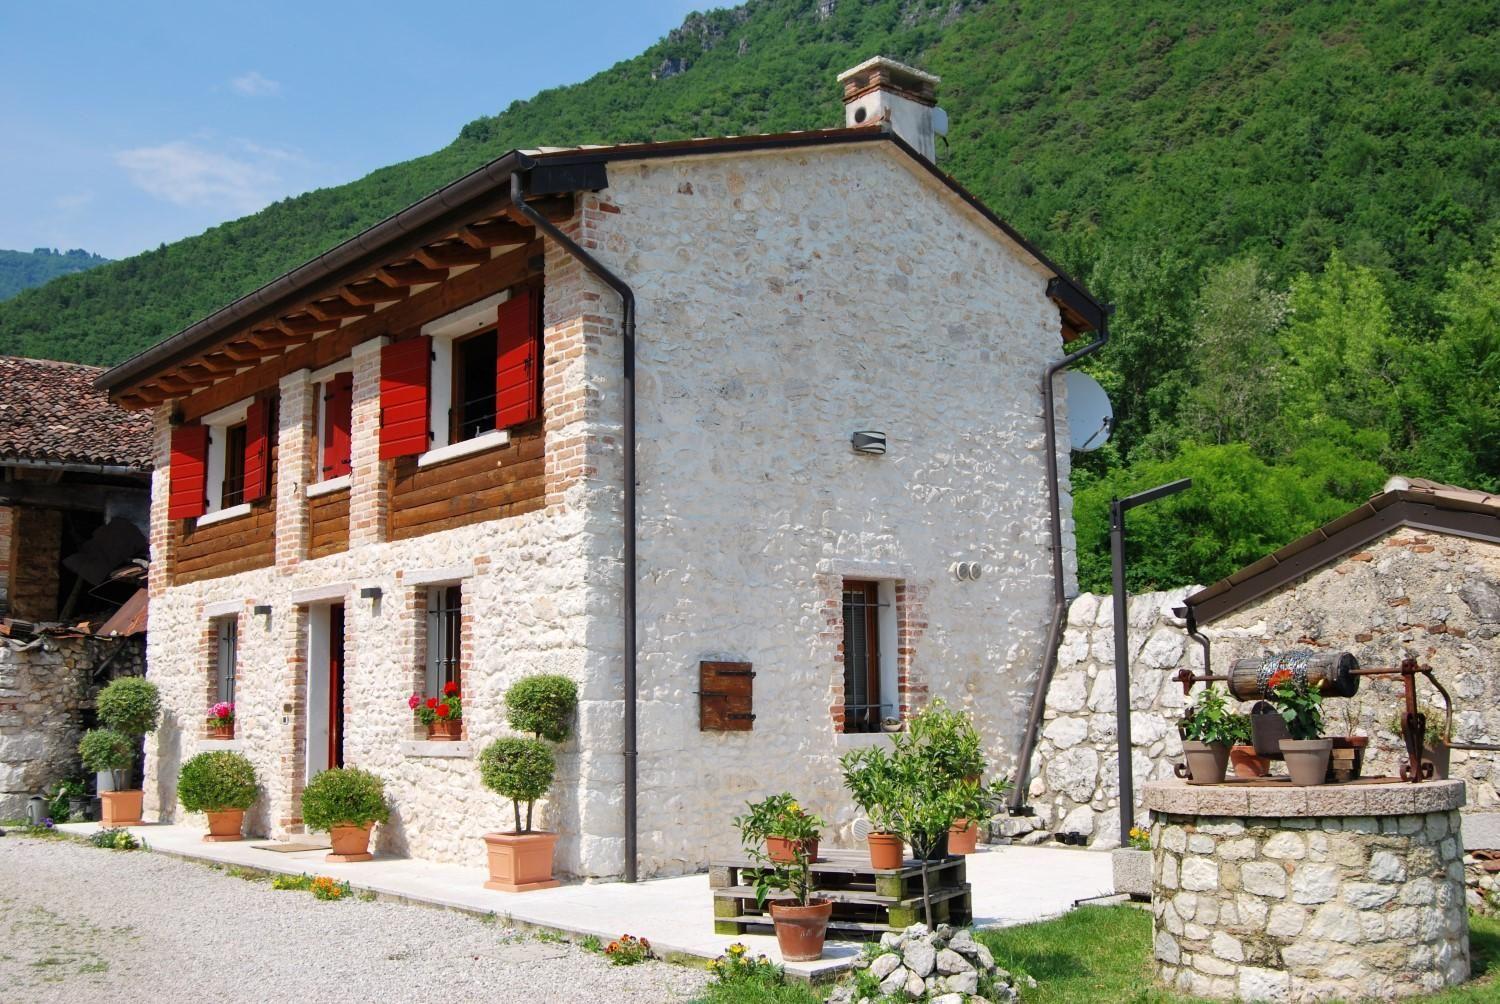 Verbringen Sie Ihren Urlaub in diesem Ferienhaus ? Ferienhaus in Italien